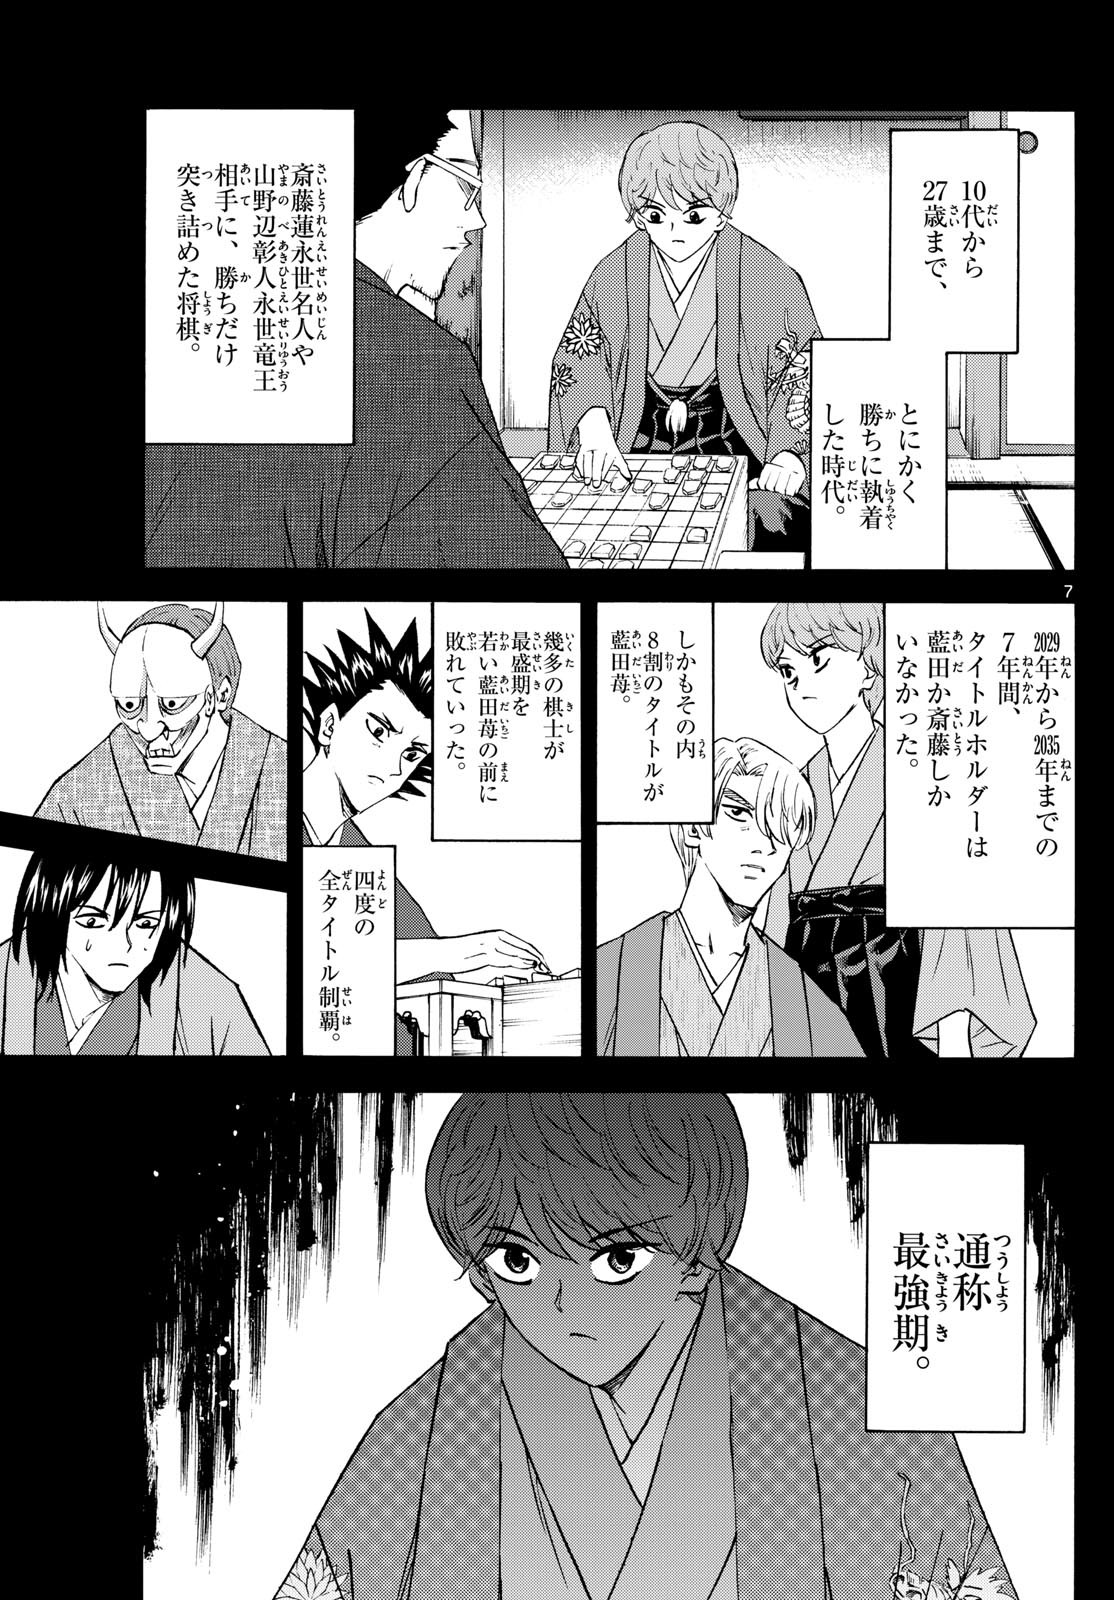 Ryu-to-Ichigo - Chapter 200 - Page 7